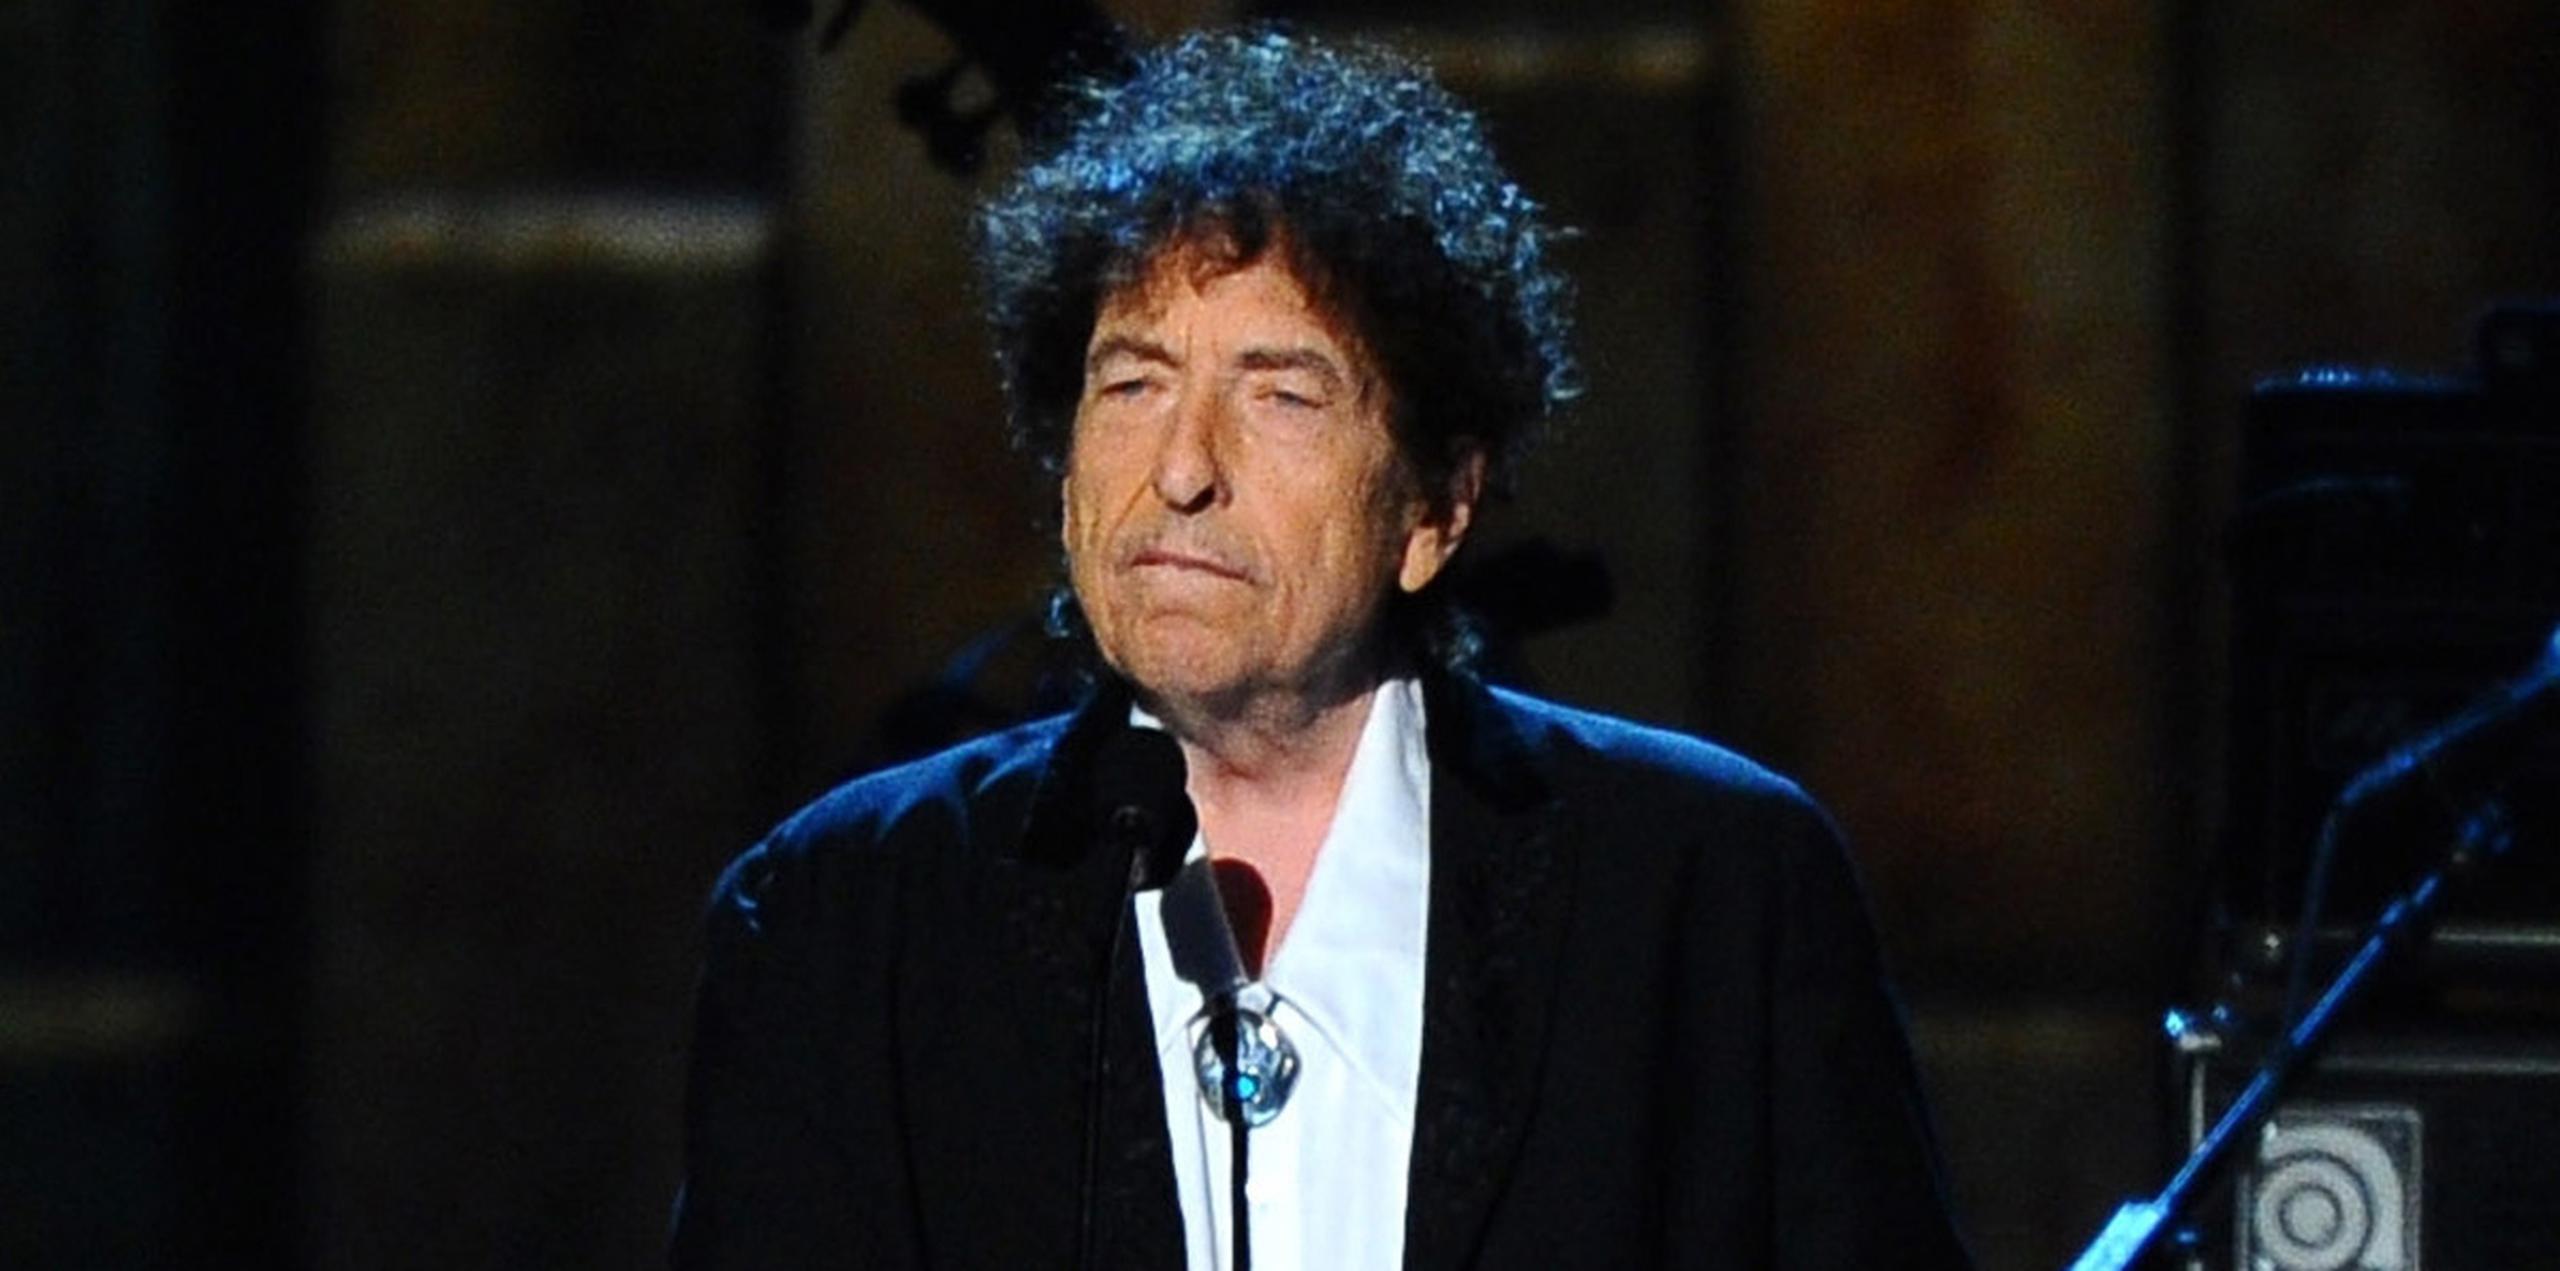 Dylan, ganador del premio Nobel de literatura, rechazó la invitación a la ceremonia del 10 de diciembre. (AP)